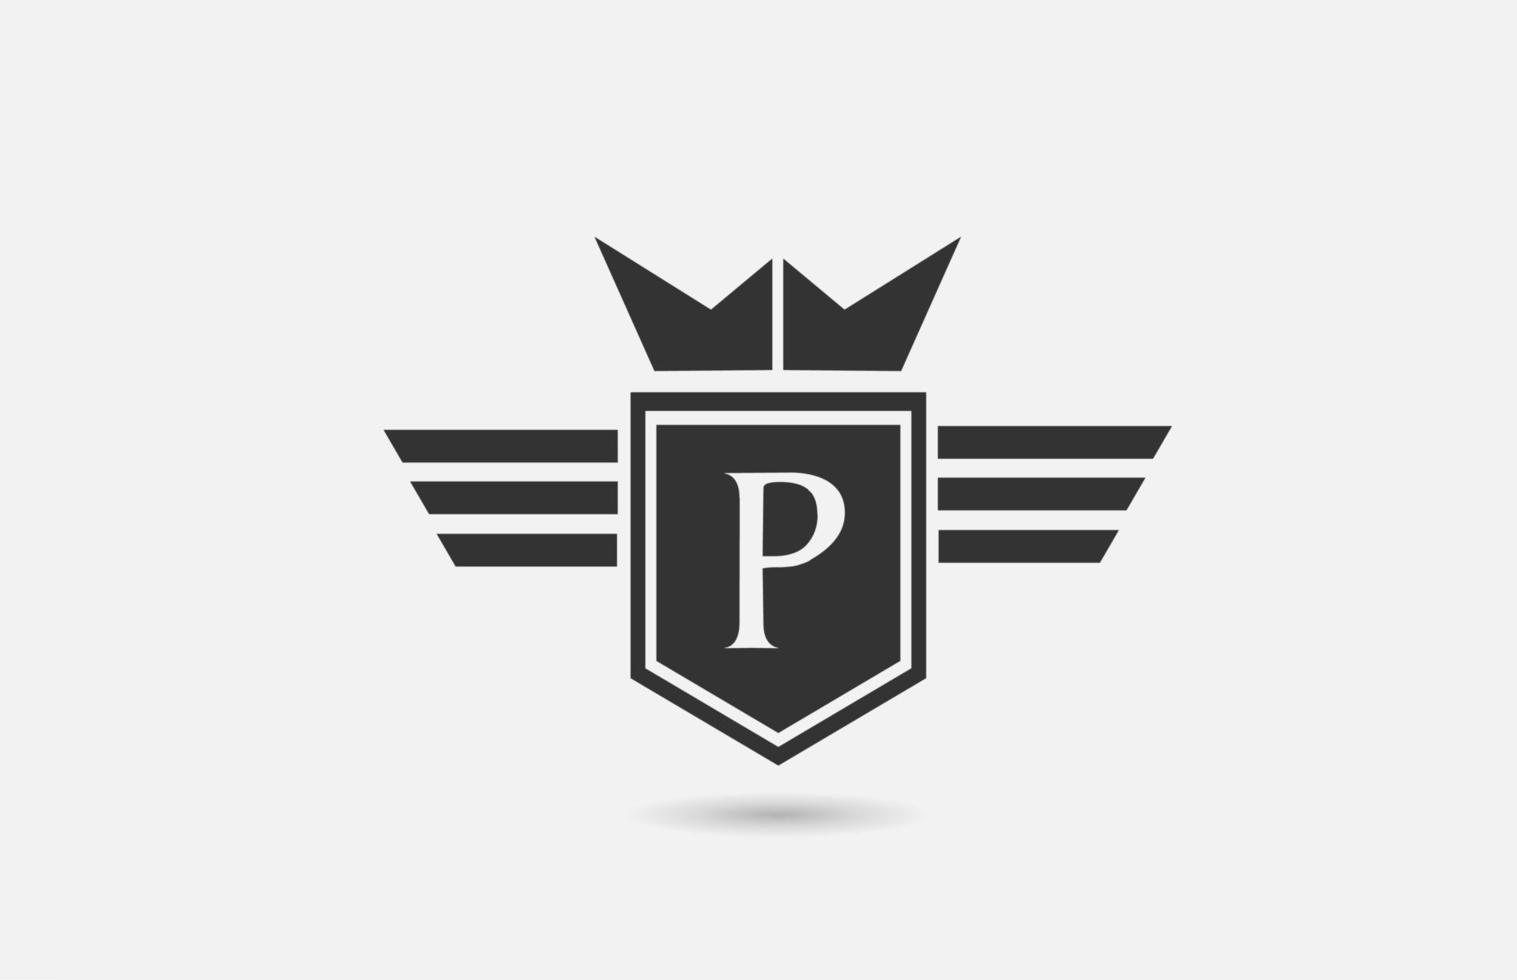 p alfabet letterpictogram logo voor bedrijf in zwart-wit. creatief badgeontwerp met koningskroonvleugels en schild voor bedrijven en bedrijven vector